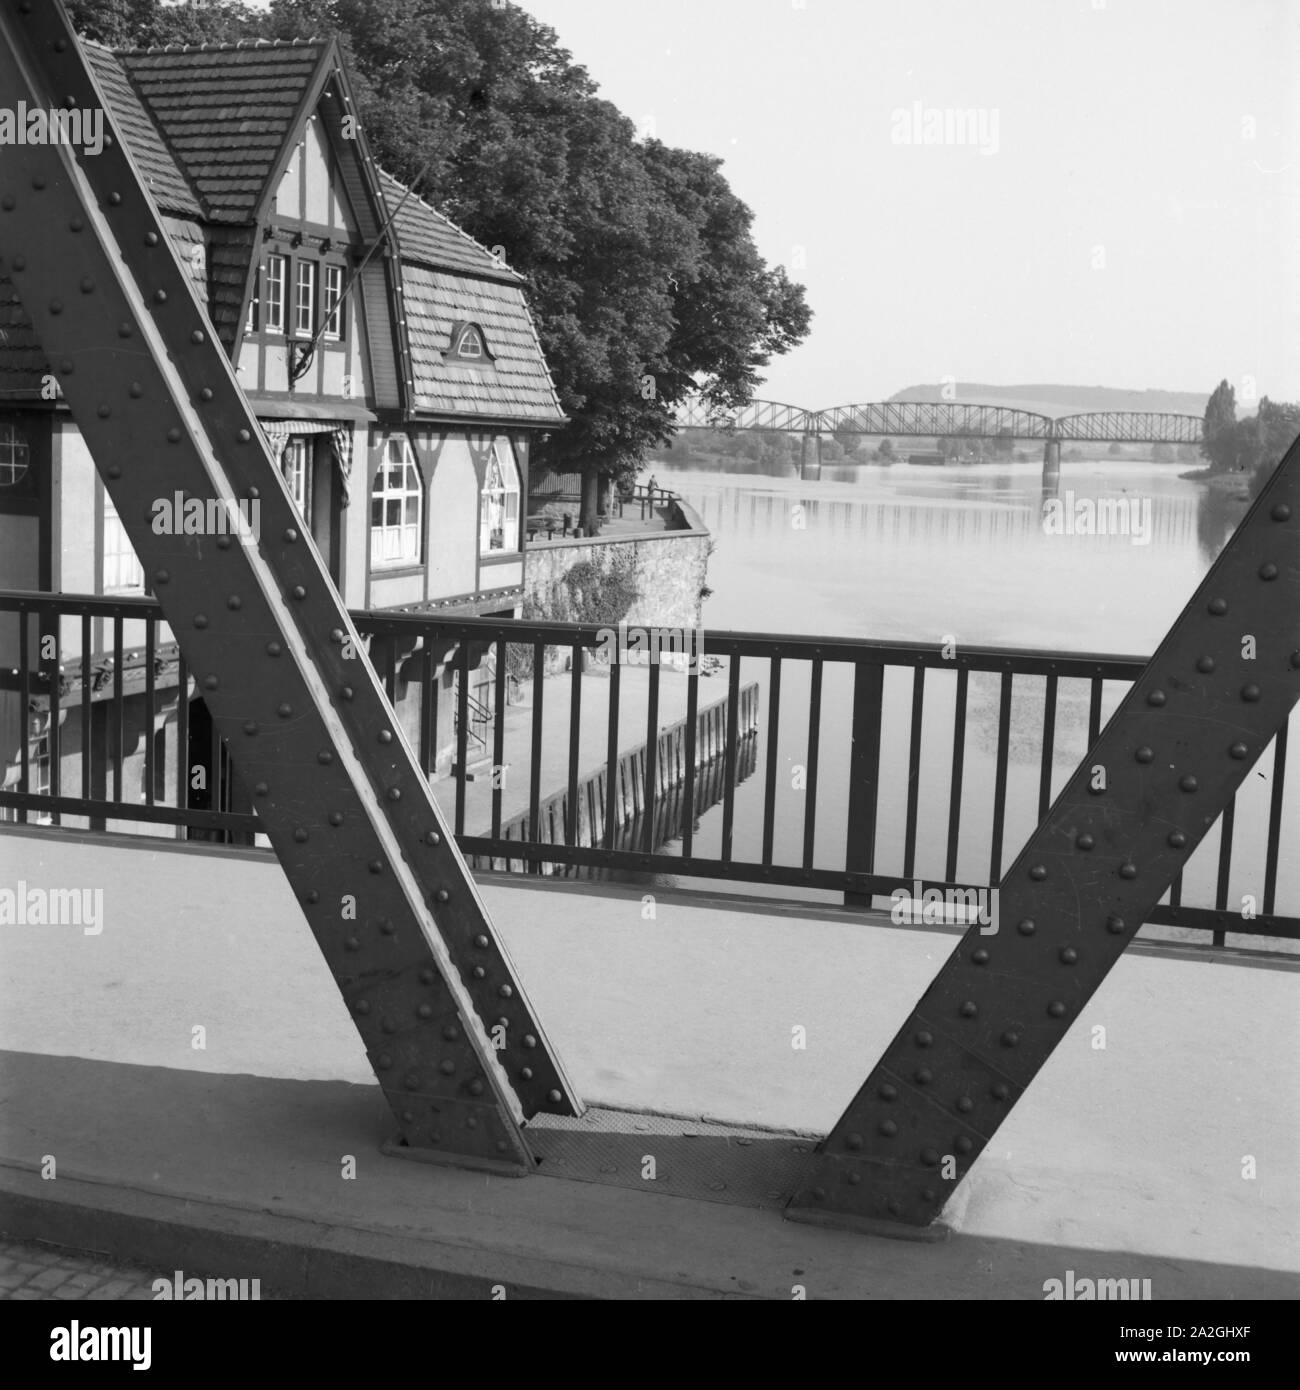 Brücke über die Kaskade mit Weser bei Hameln, Deutschland 1930 er Jahre. Pont sur la rivière Weser près de Hameln, Allemagne 1930. Banque D'Images